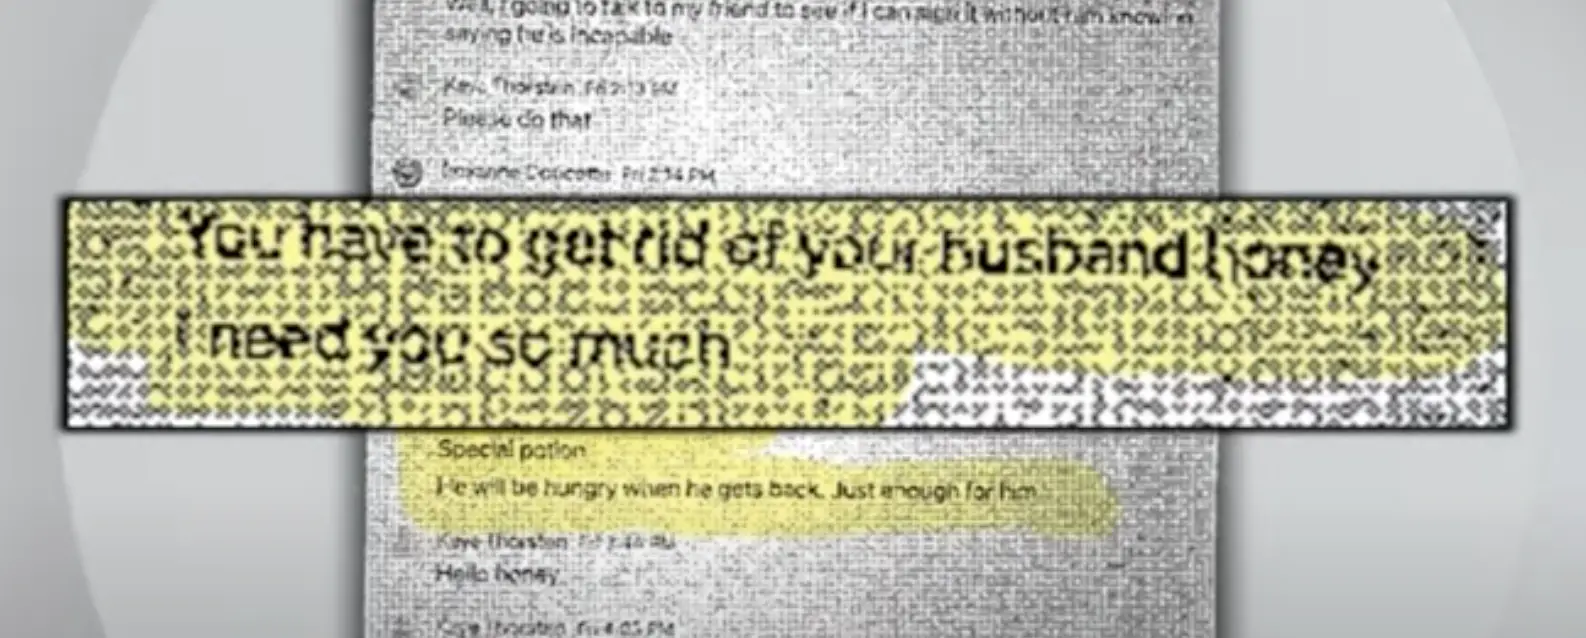 Mensaje del estafador a Roxanne Doucette, visto en un vídeo fechado el 7 de enero de 2024 | Foto: Youtube.com/cbsboston